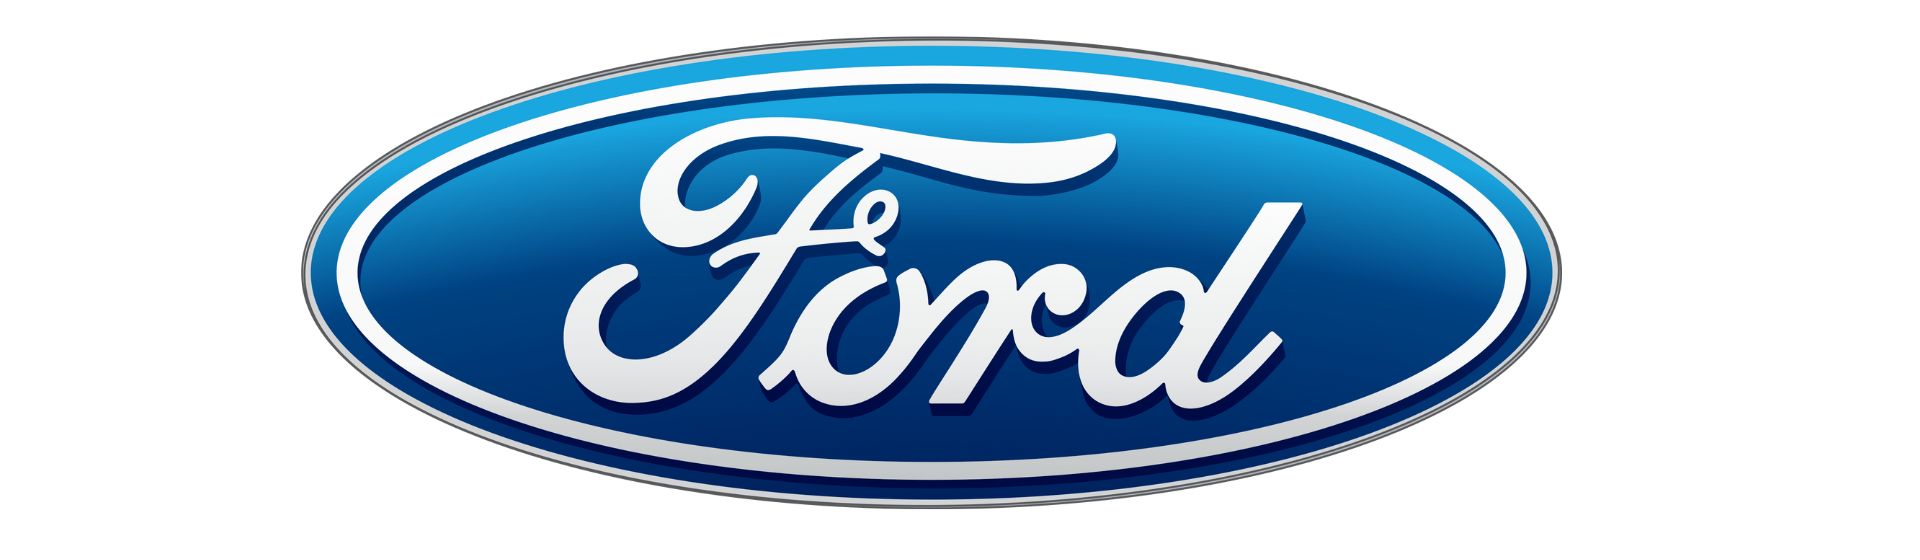 Ford homologação